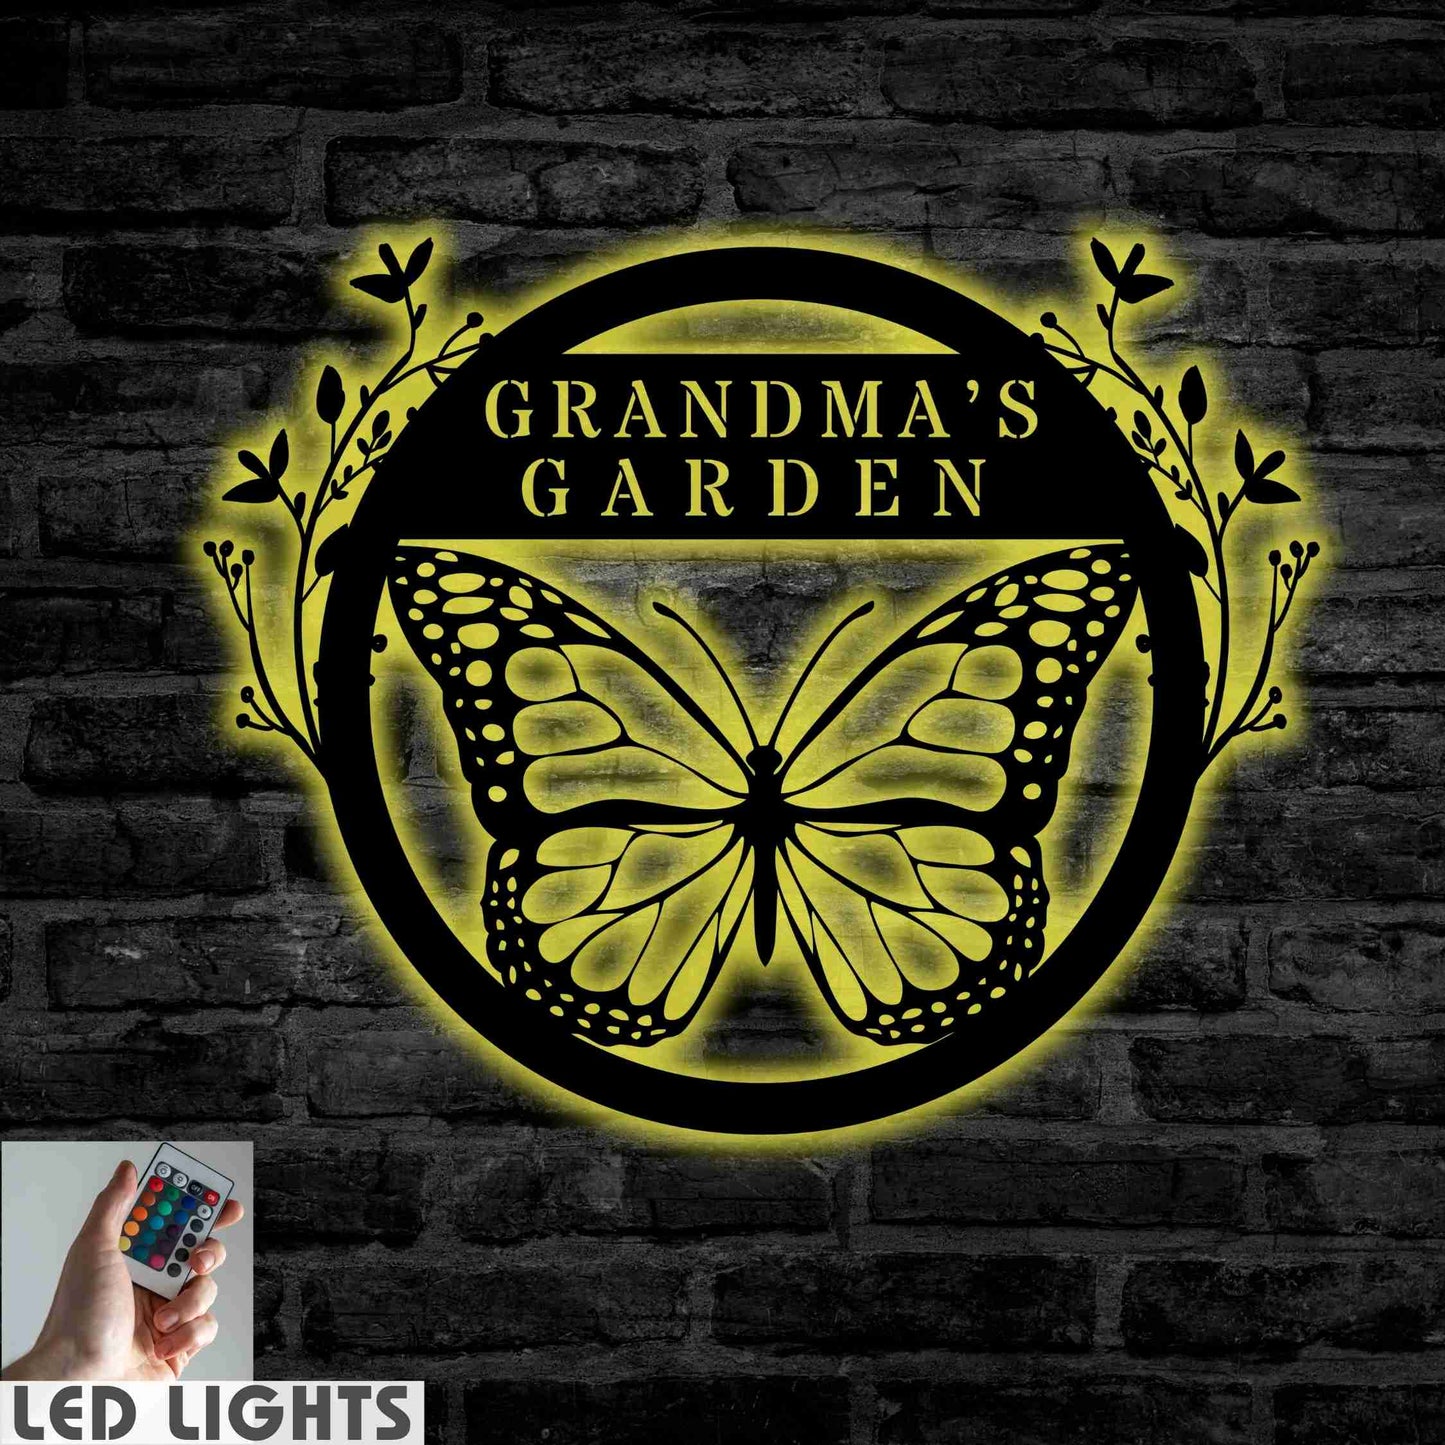 Butterfly Garden Sign